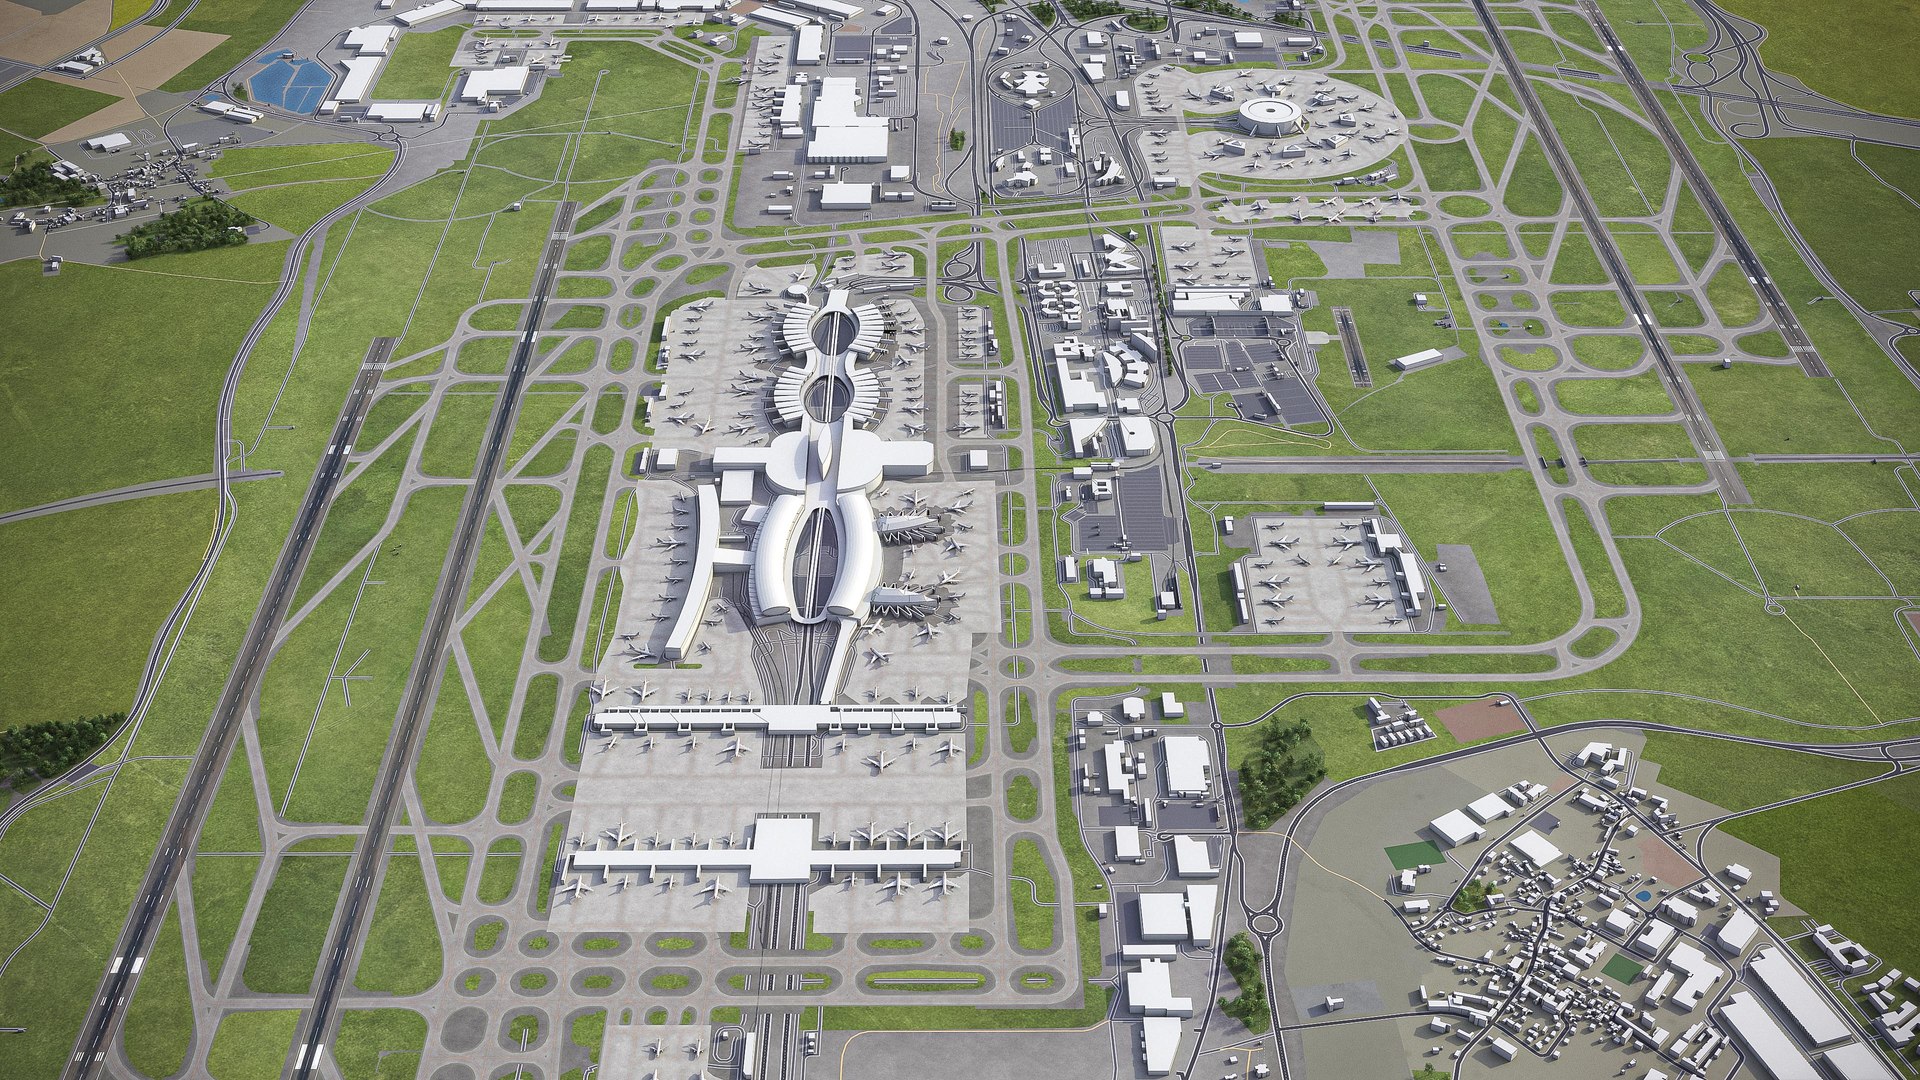 Paris Charles De Gaulle Airport - 3D Model by 3dstudio